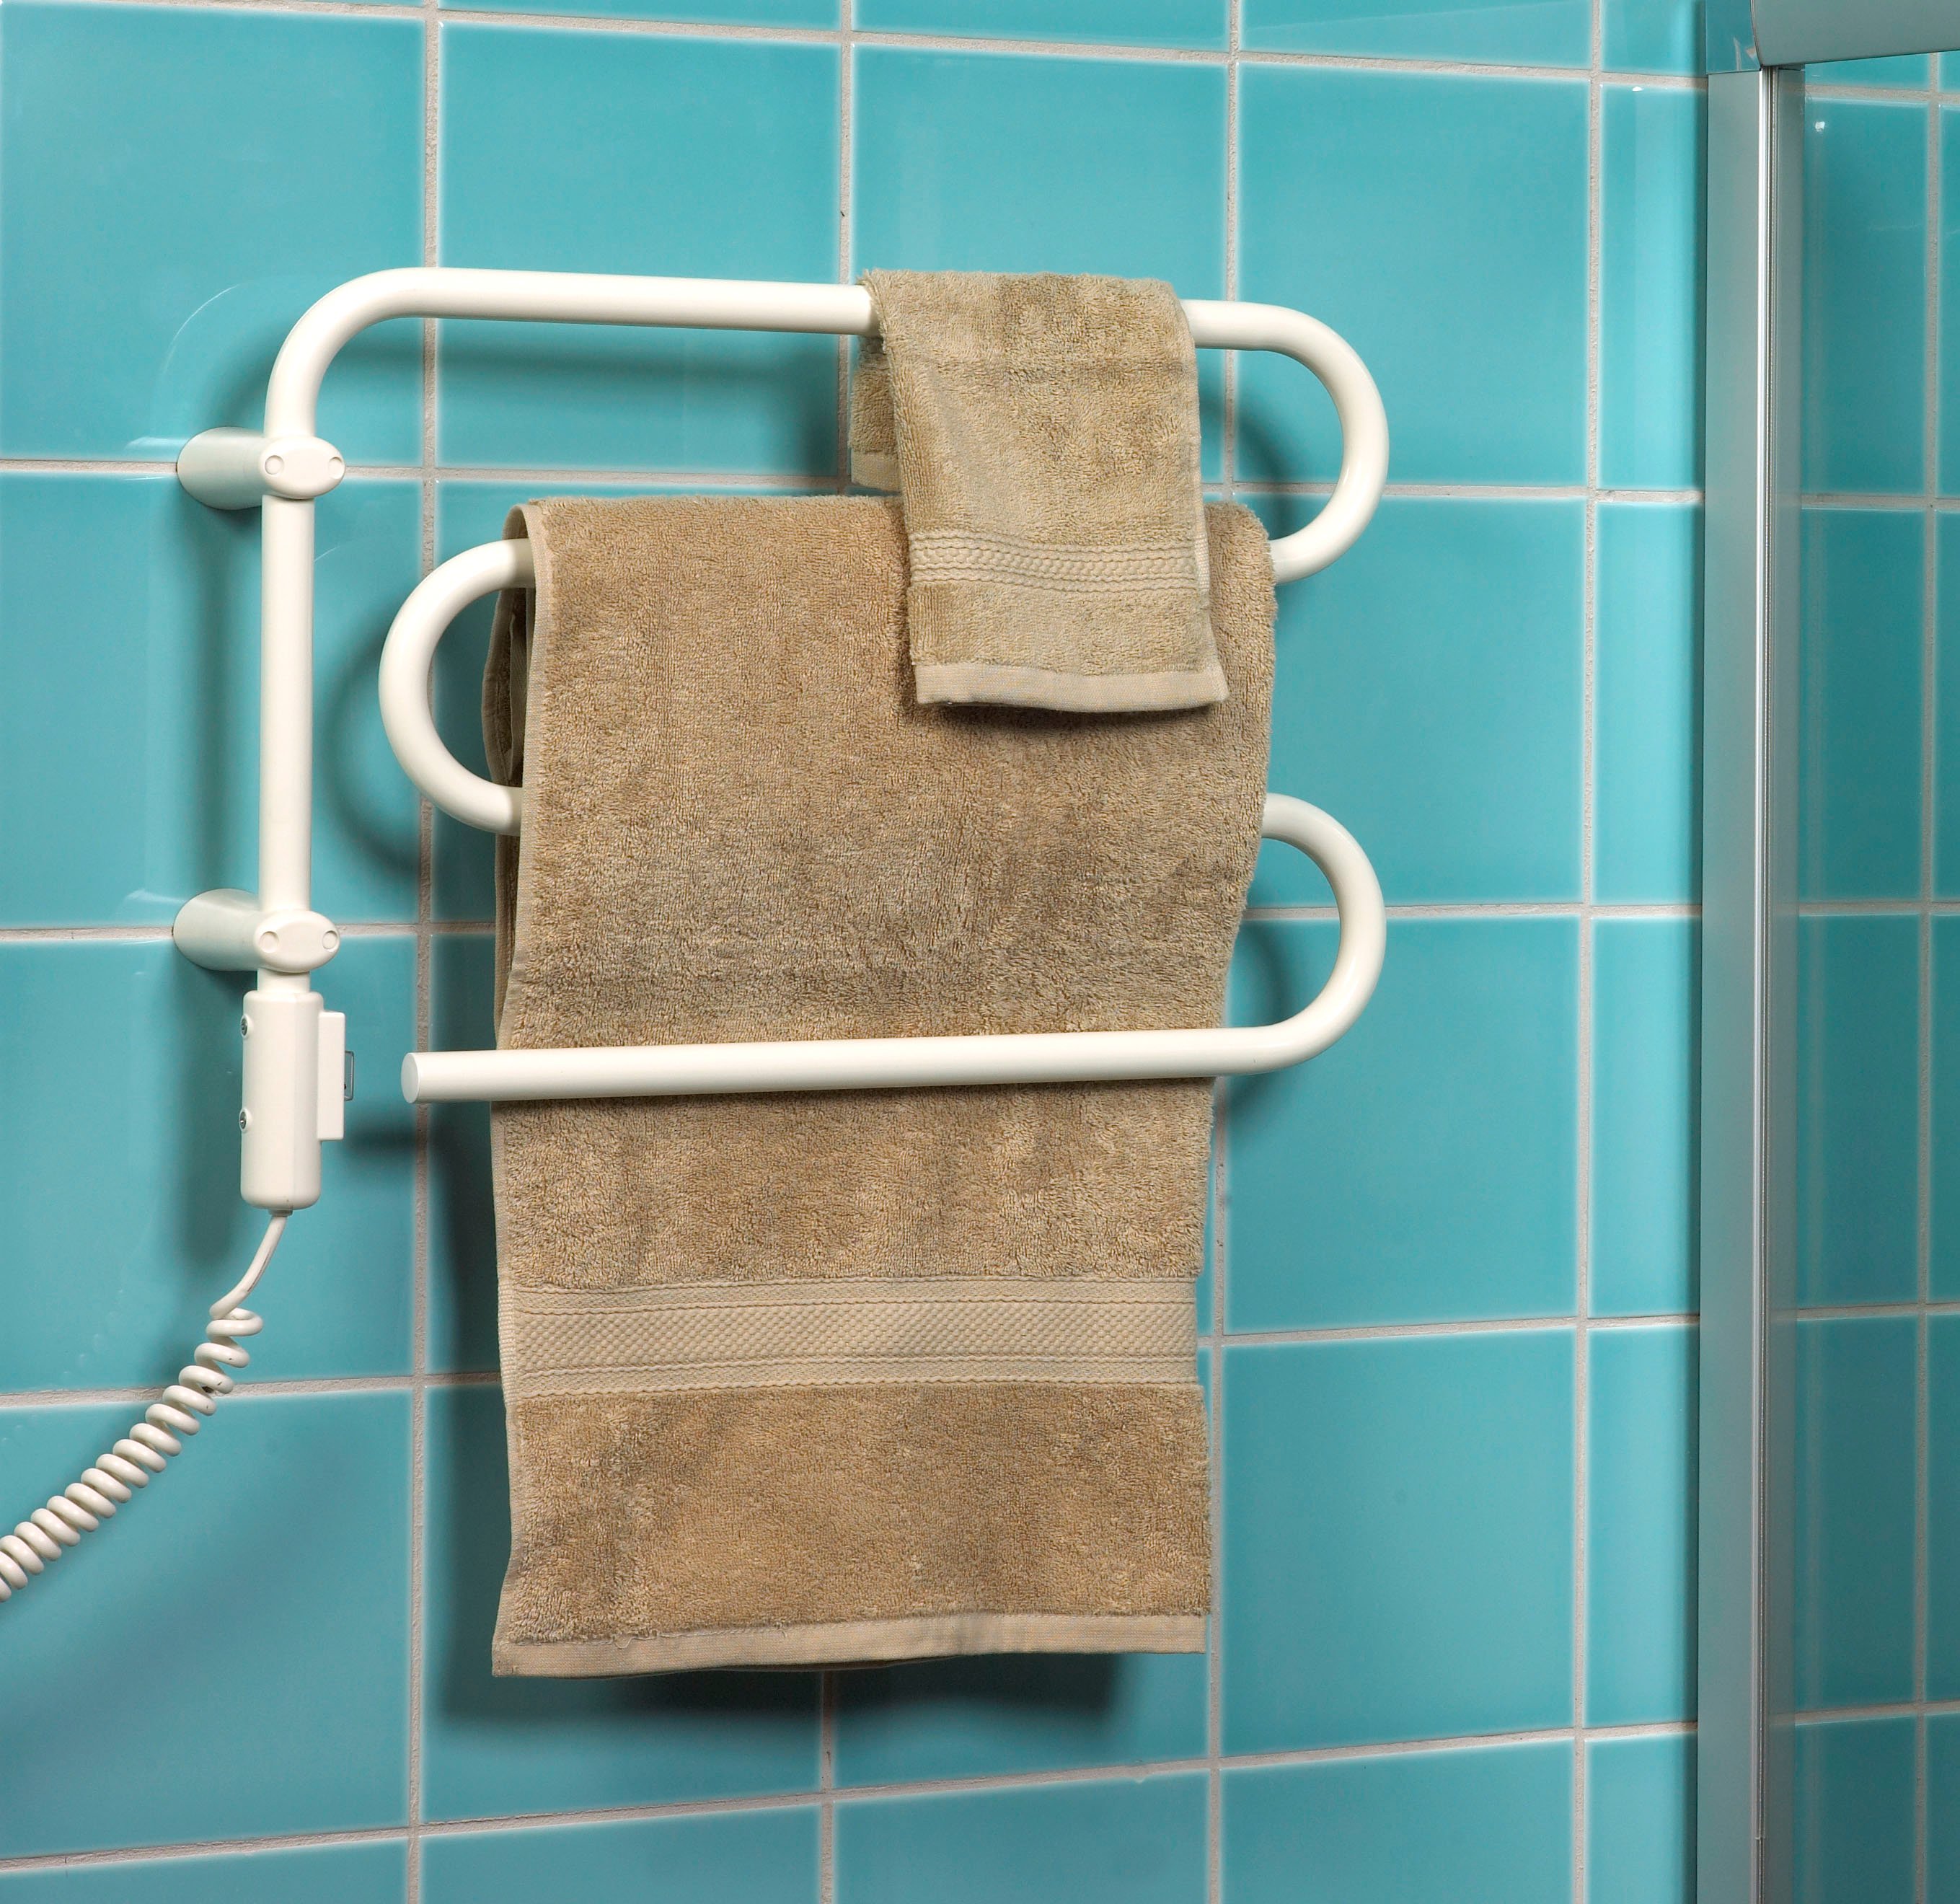 Сушилка для полотенец электрическая. Электро полотенце сушители. Полотенцесушитель Towel Dryer -p-352-500. Полотенцесушитель электрический ADAX HKT 163 WS. Сушилка для полотенец в ванную.